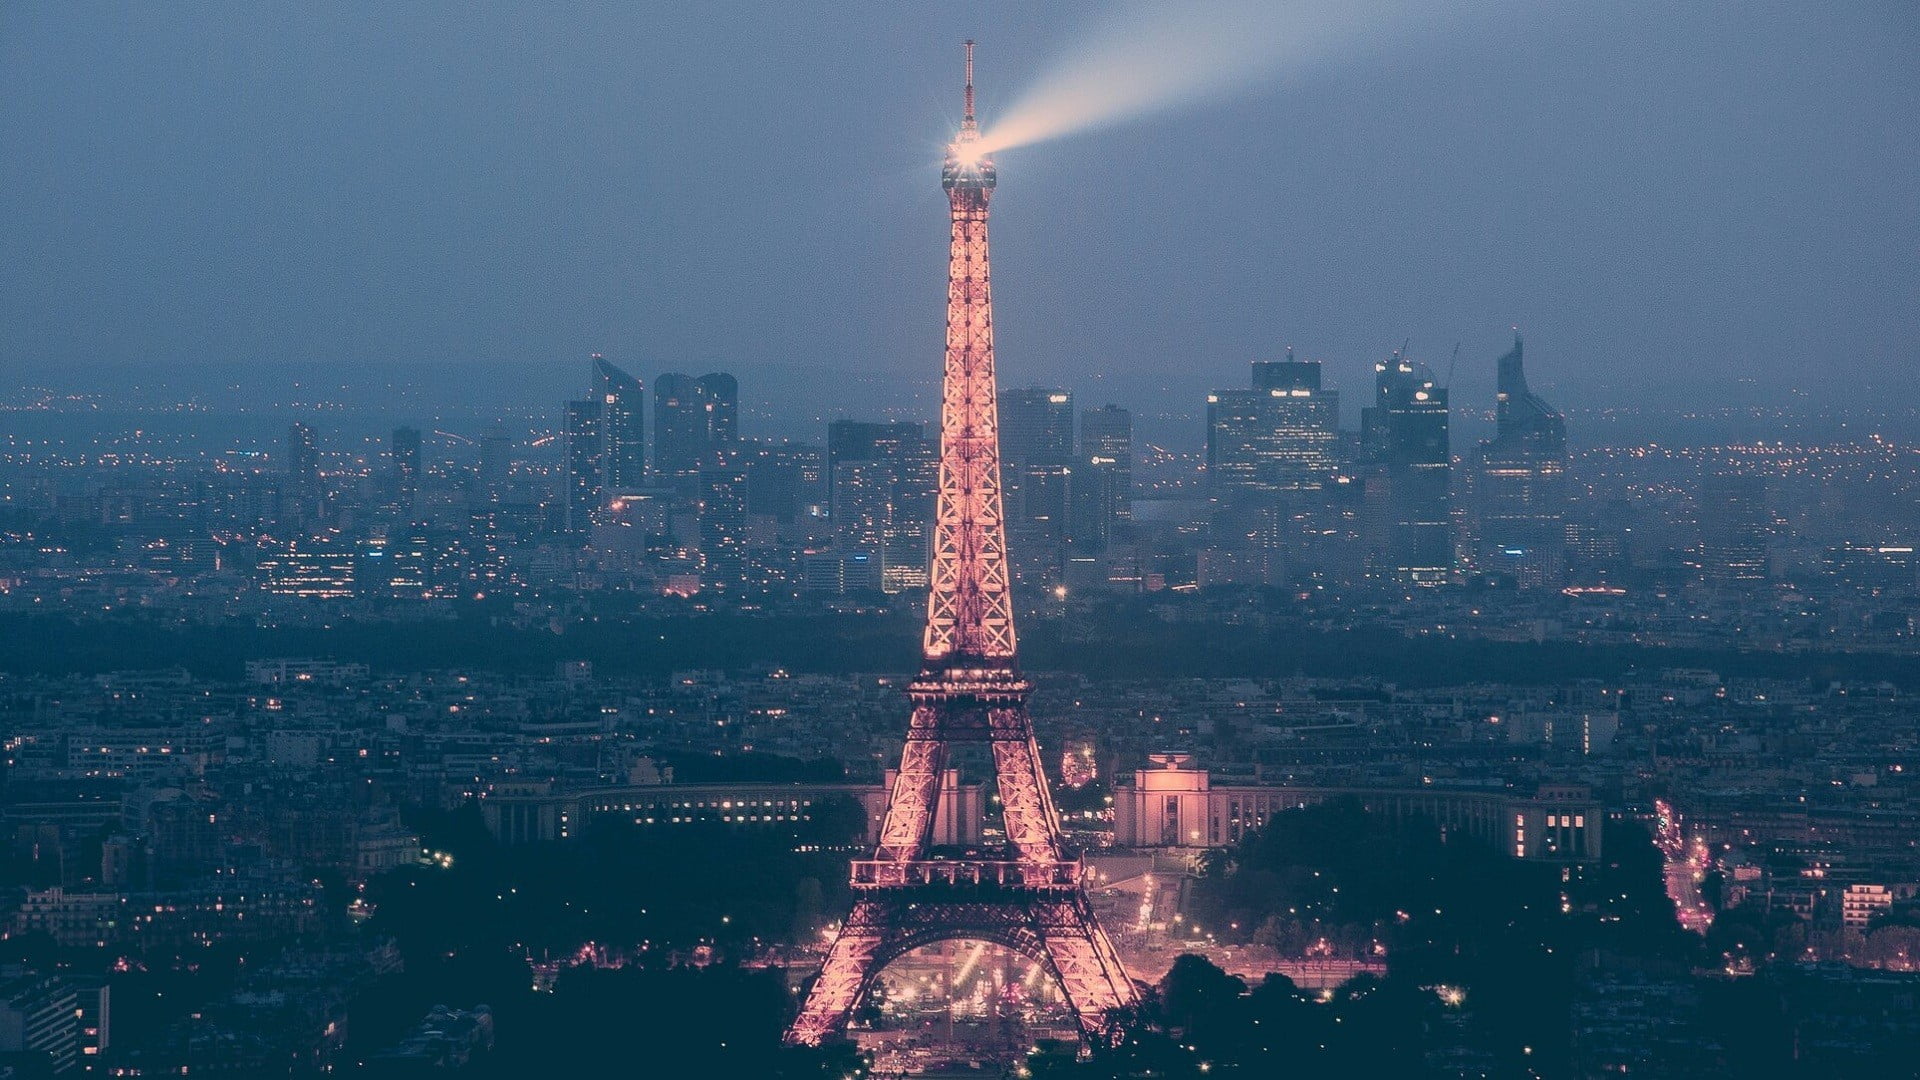 Eiffel Tower, Paris, cityscape, architecture, built structure